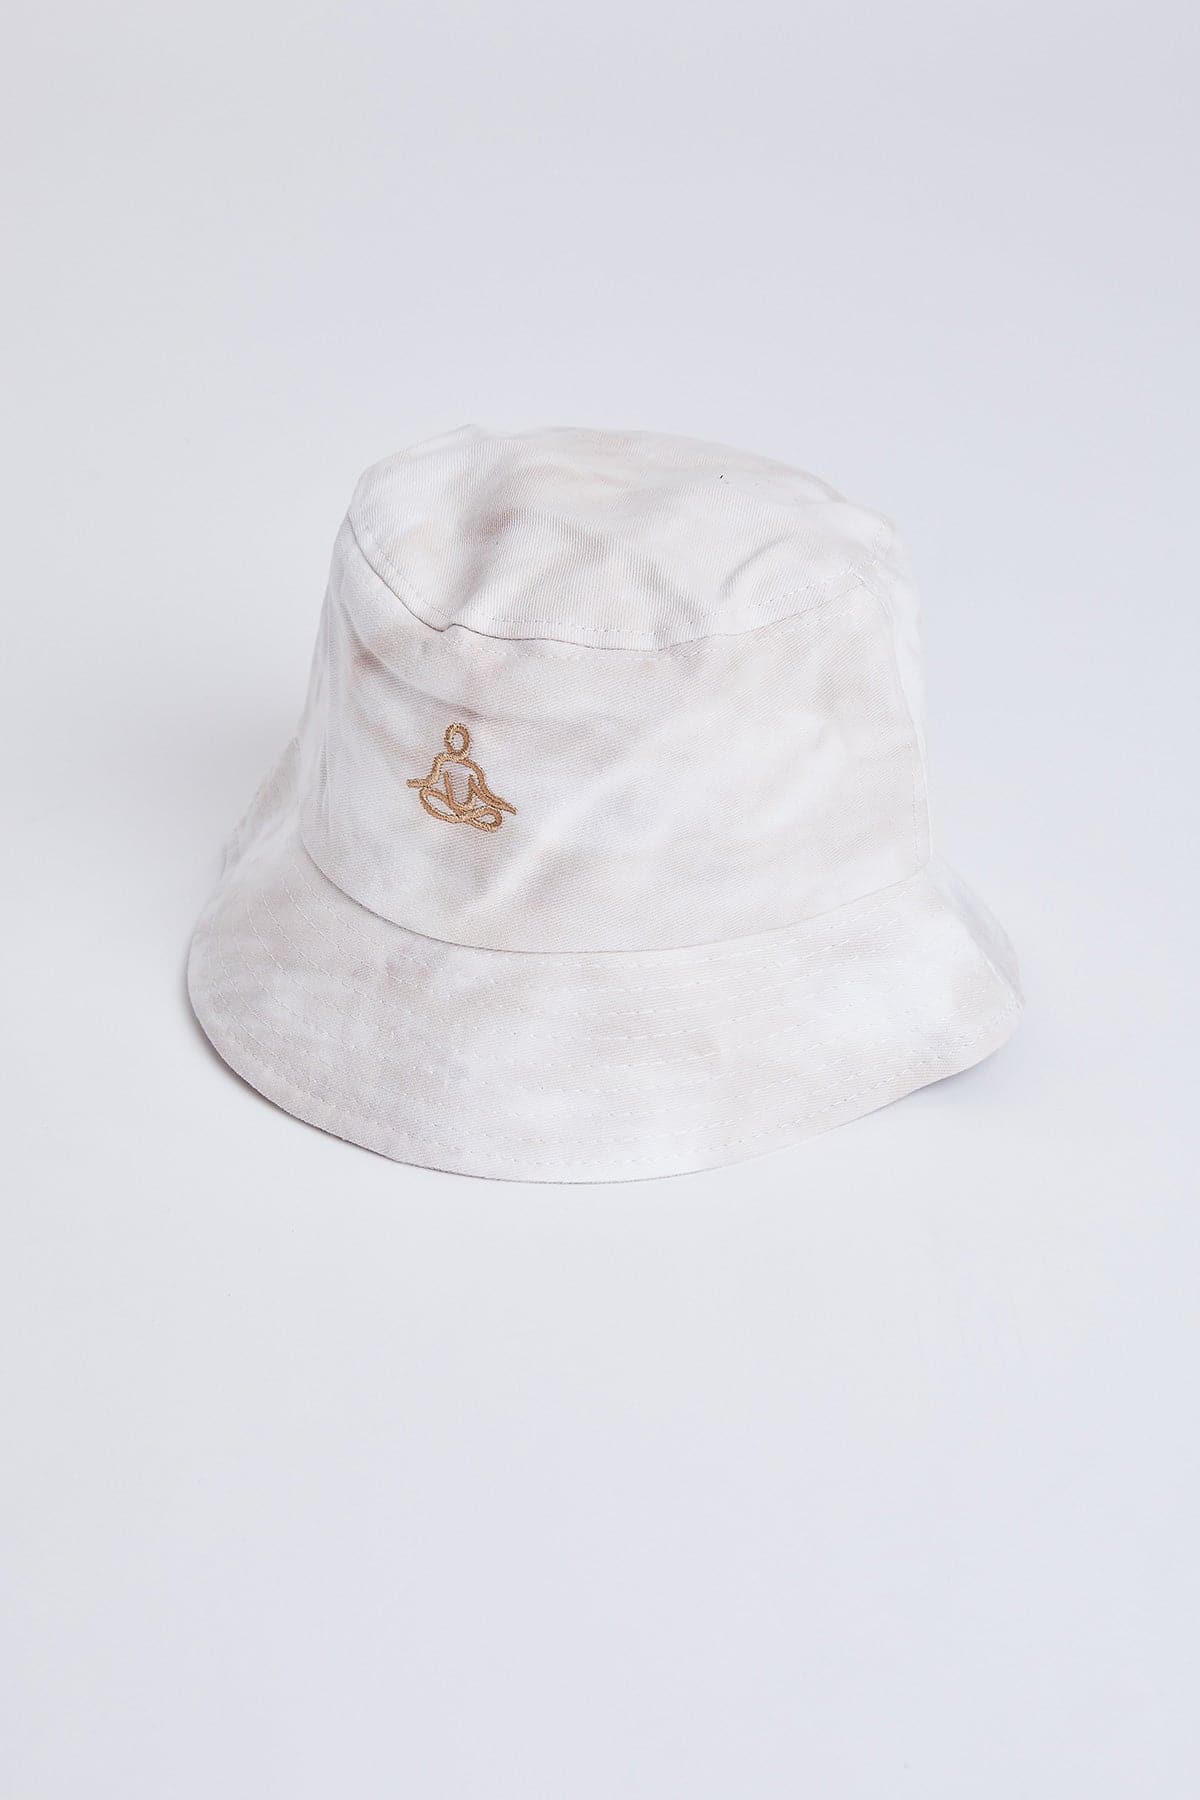 Women’s Tie Dye Namaste Bucket Hat